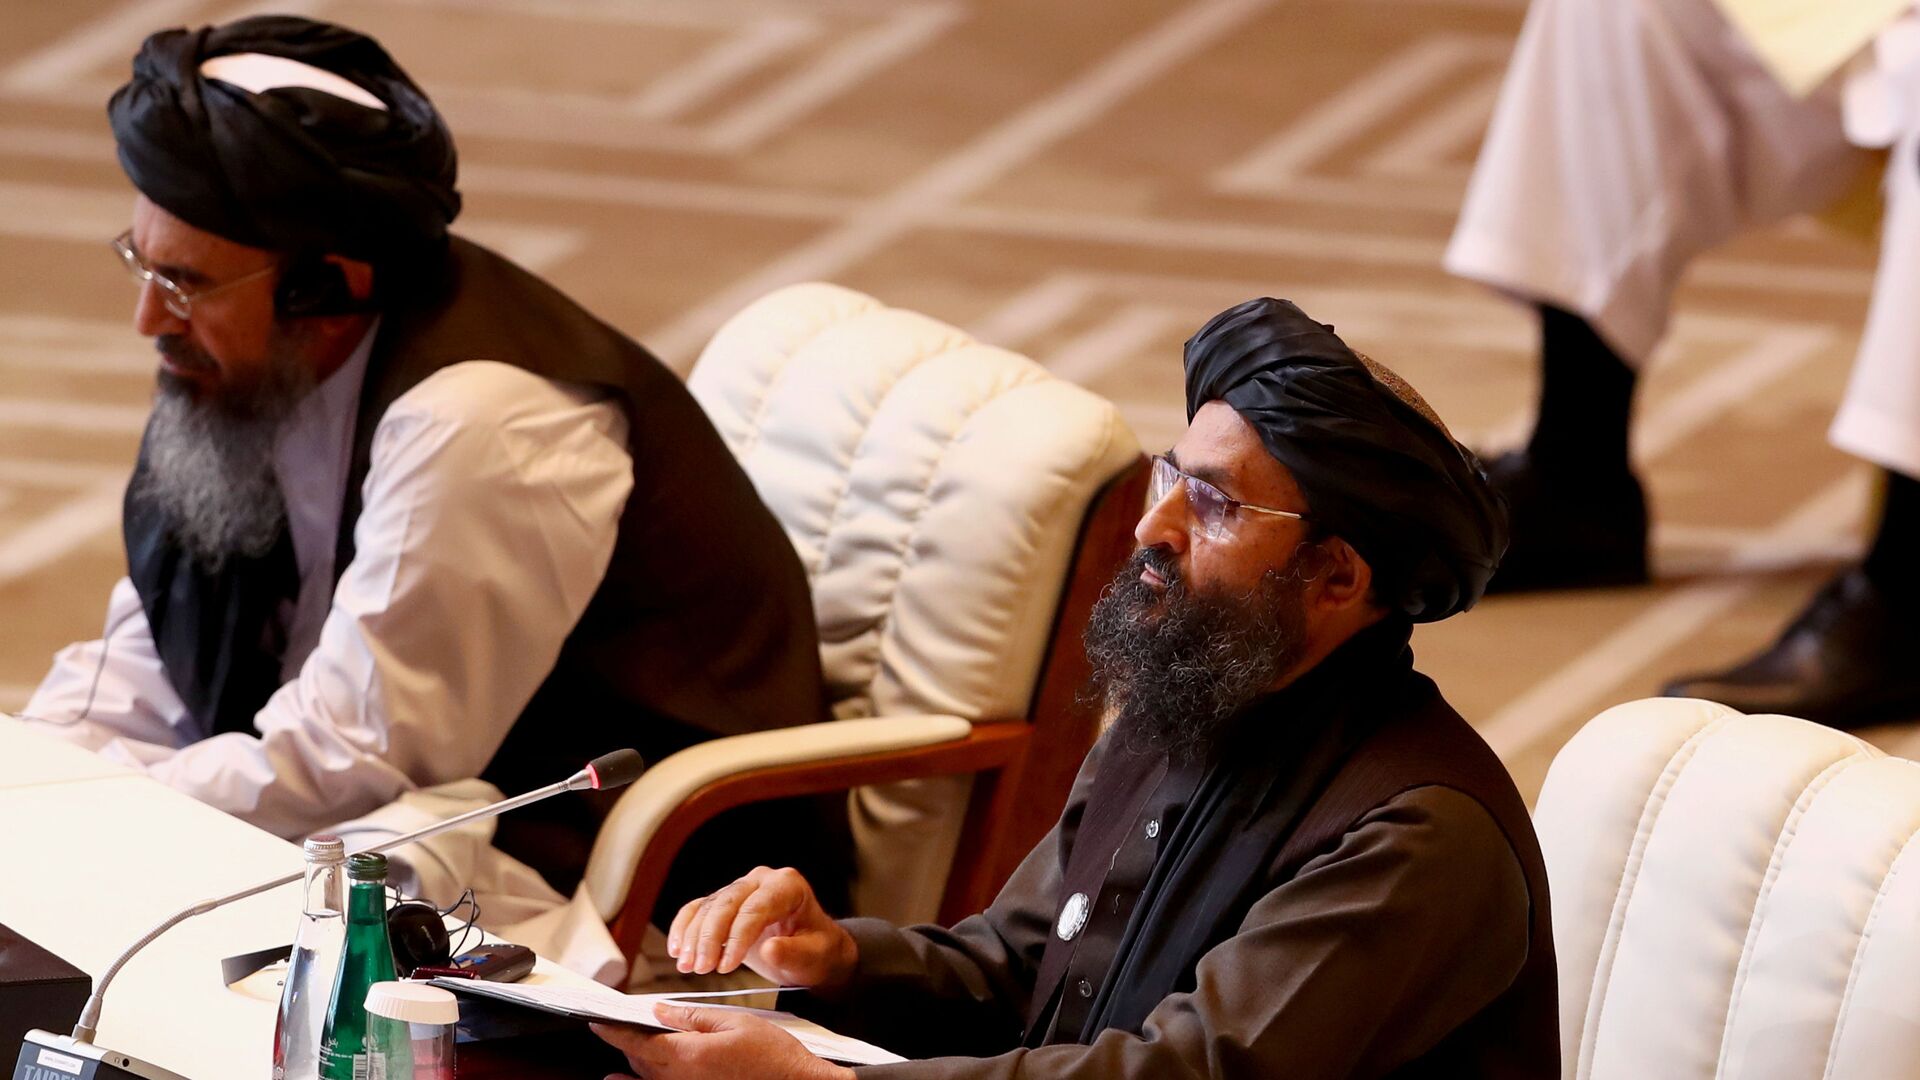 Лидер движения Талибан (запрещено в РФ)  во время переговоров с правительством Афганистана в Катаре - Sputnik Таджикистан, 1920, 11.05.2021